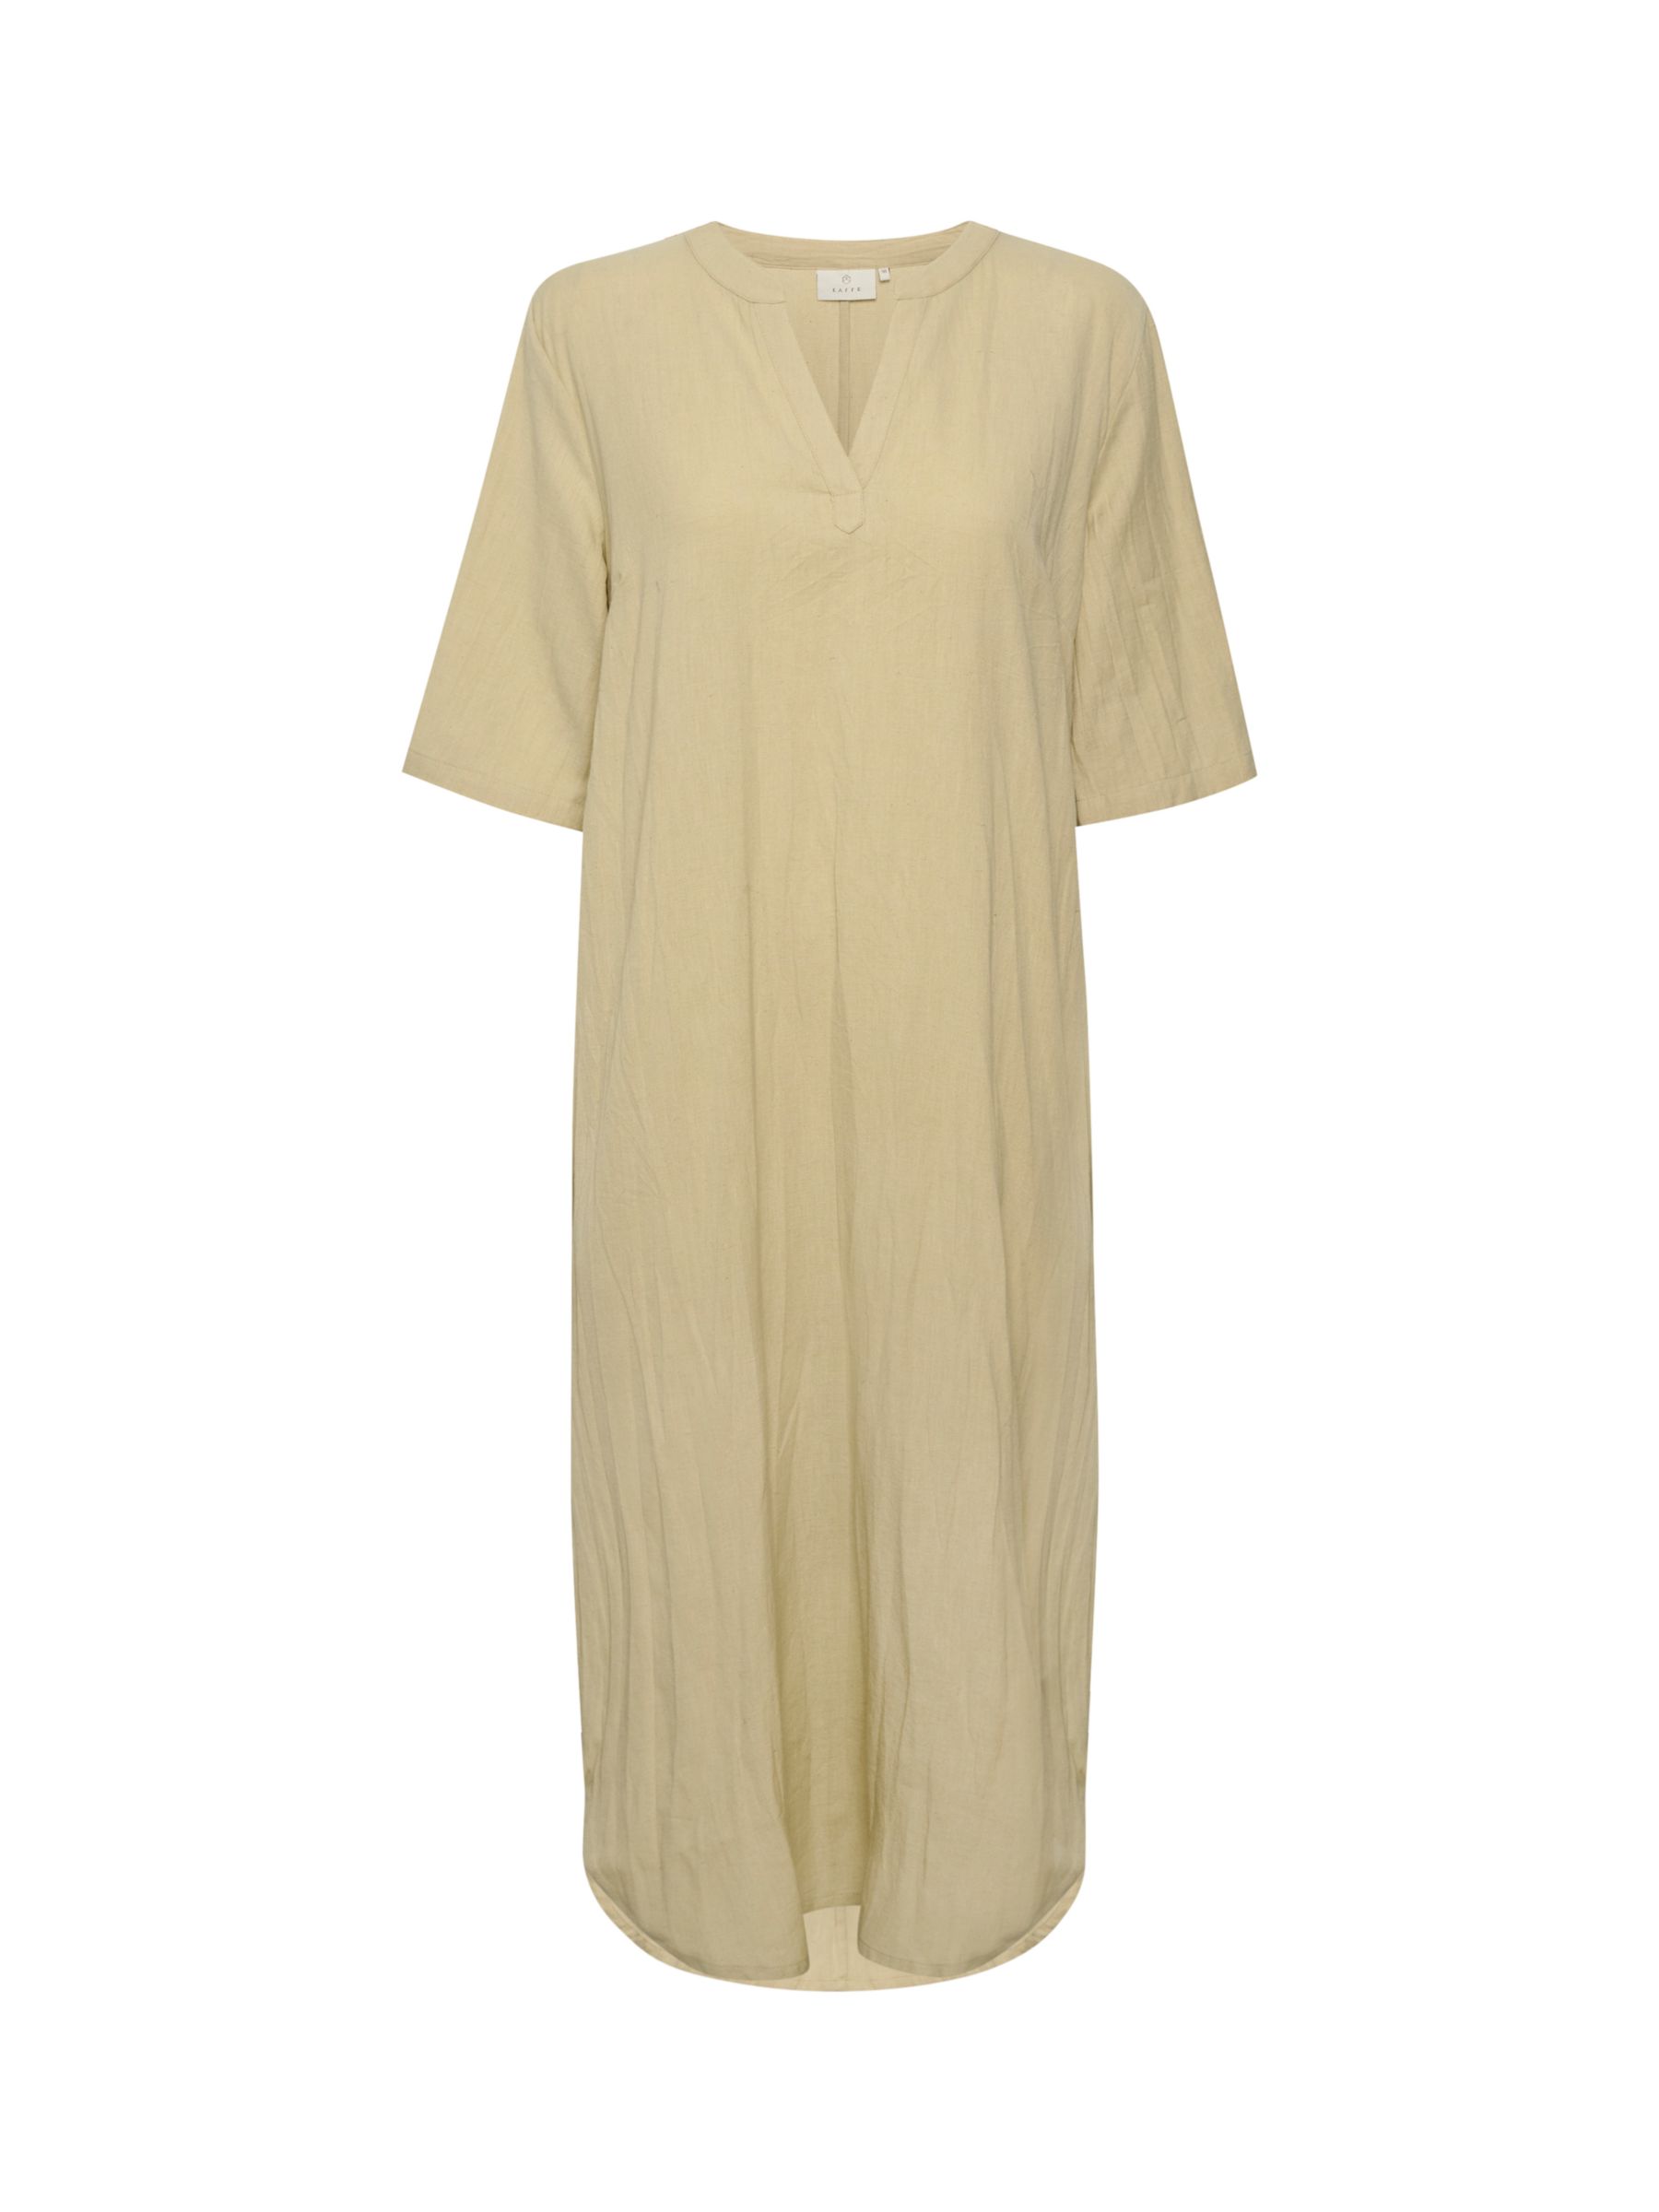 KAFFE Majse Cotton Linen Blend Kaftan Dress, Feather Grey, 10